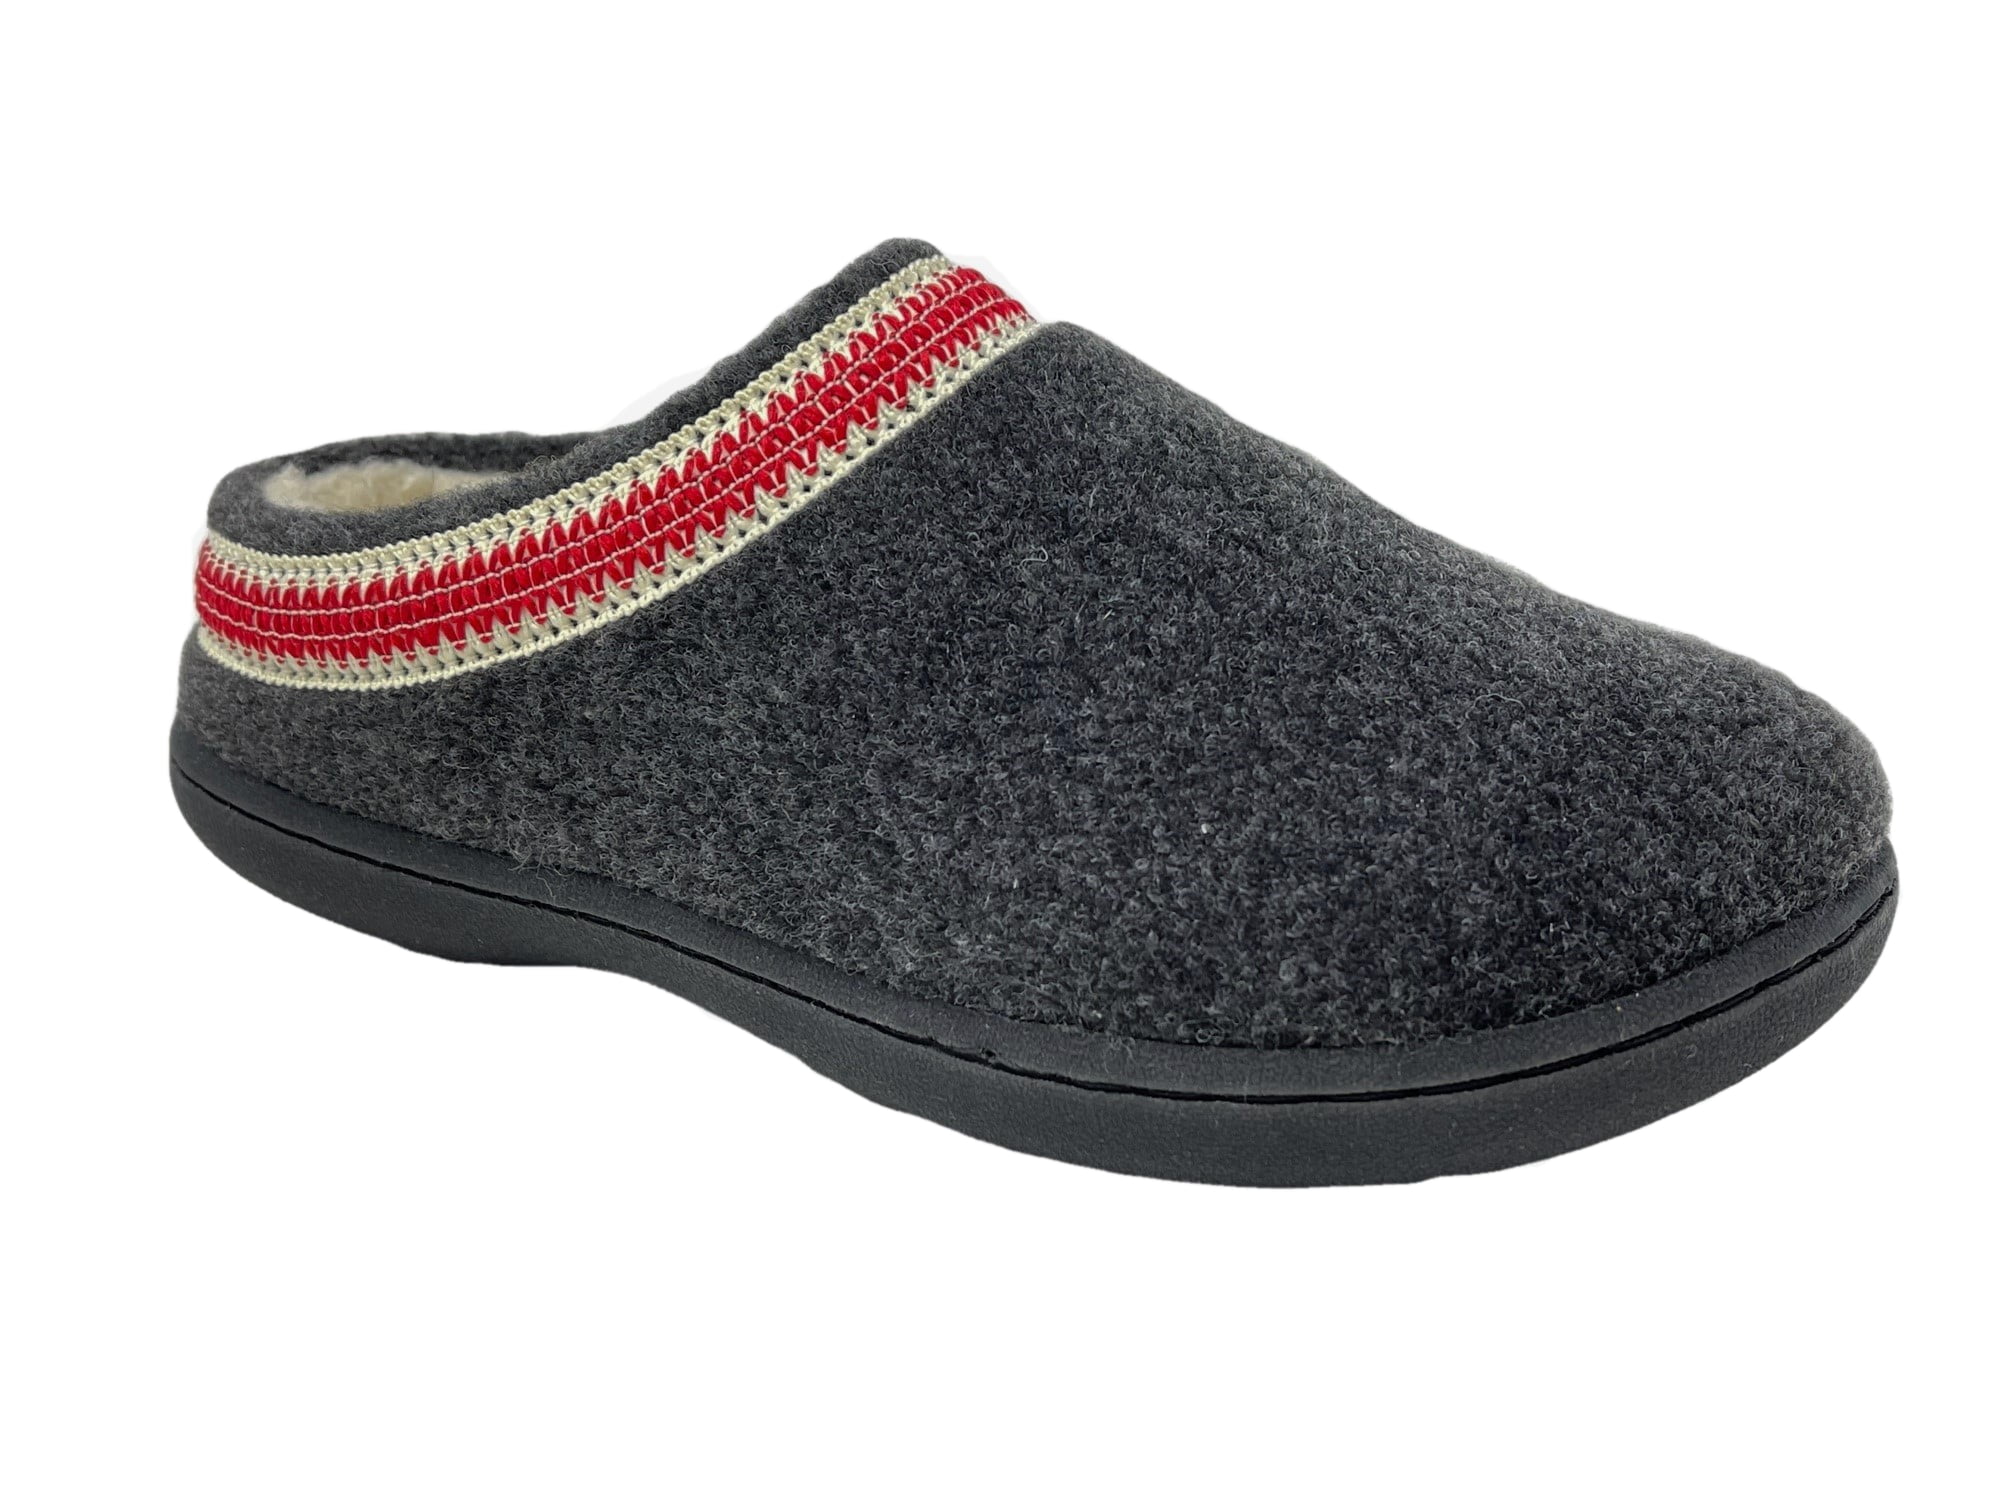 clarks indoor outdoor slippers womens